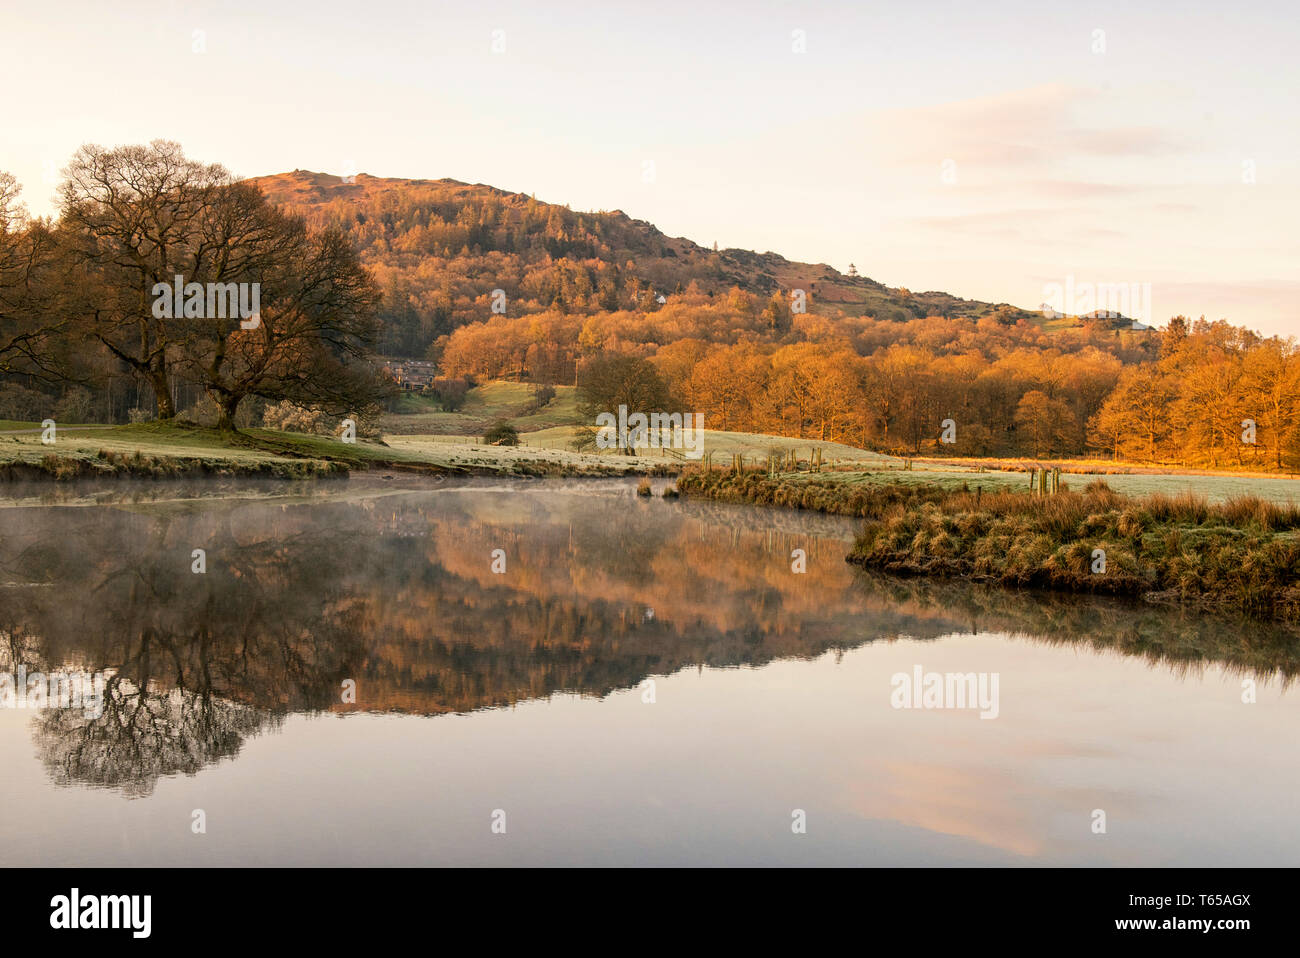 Einem nebligen Morgen auf dem Fluss Brathay in der Nähe von elterwater im Nationalpark Lake District, Cumbria England Großbritannien Stockfoto